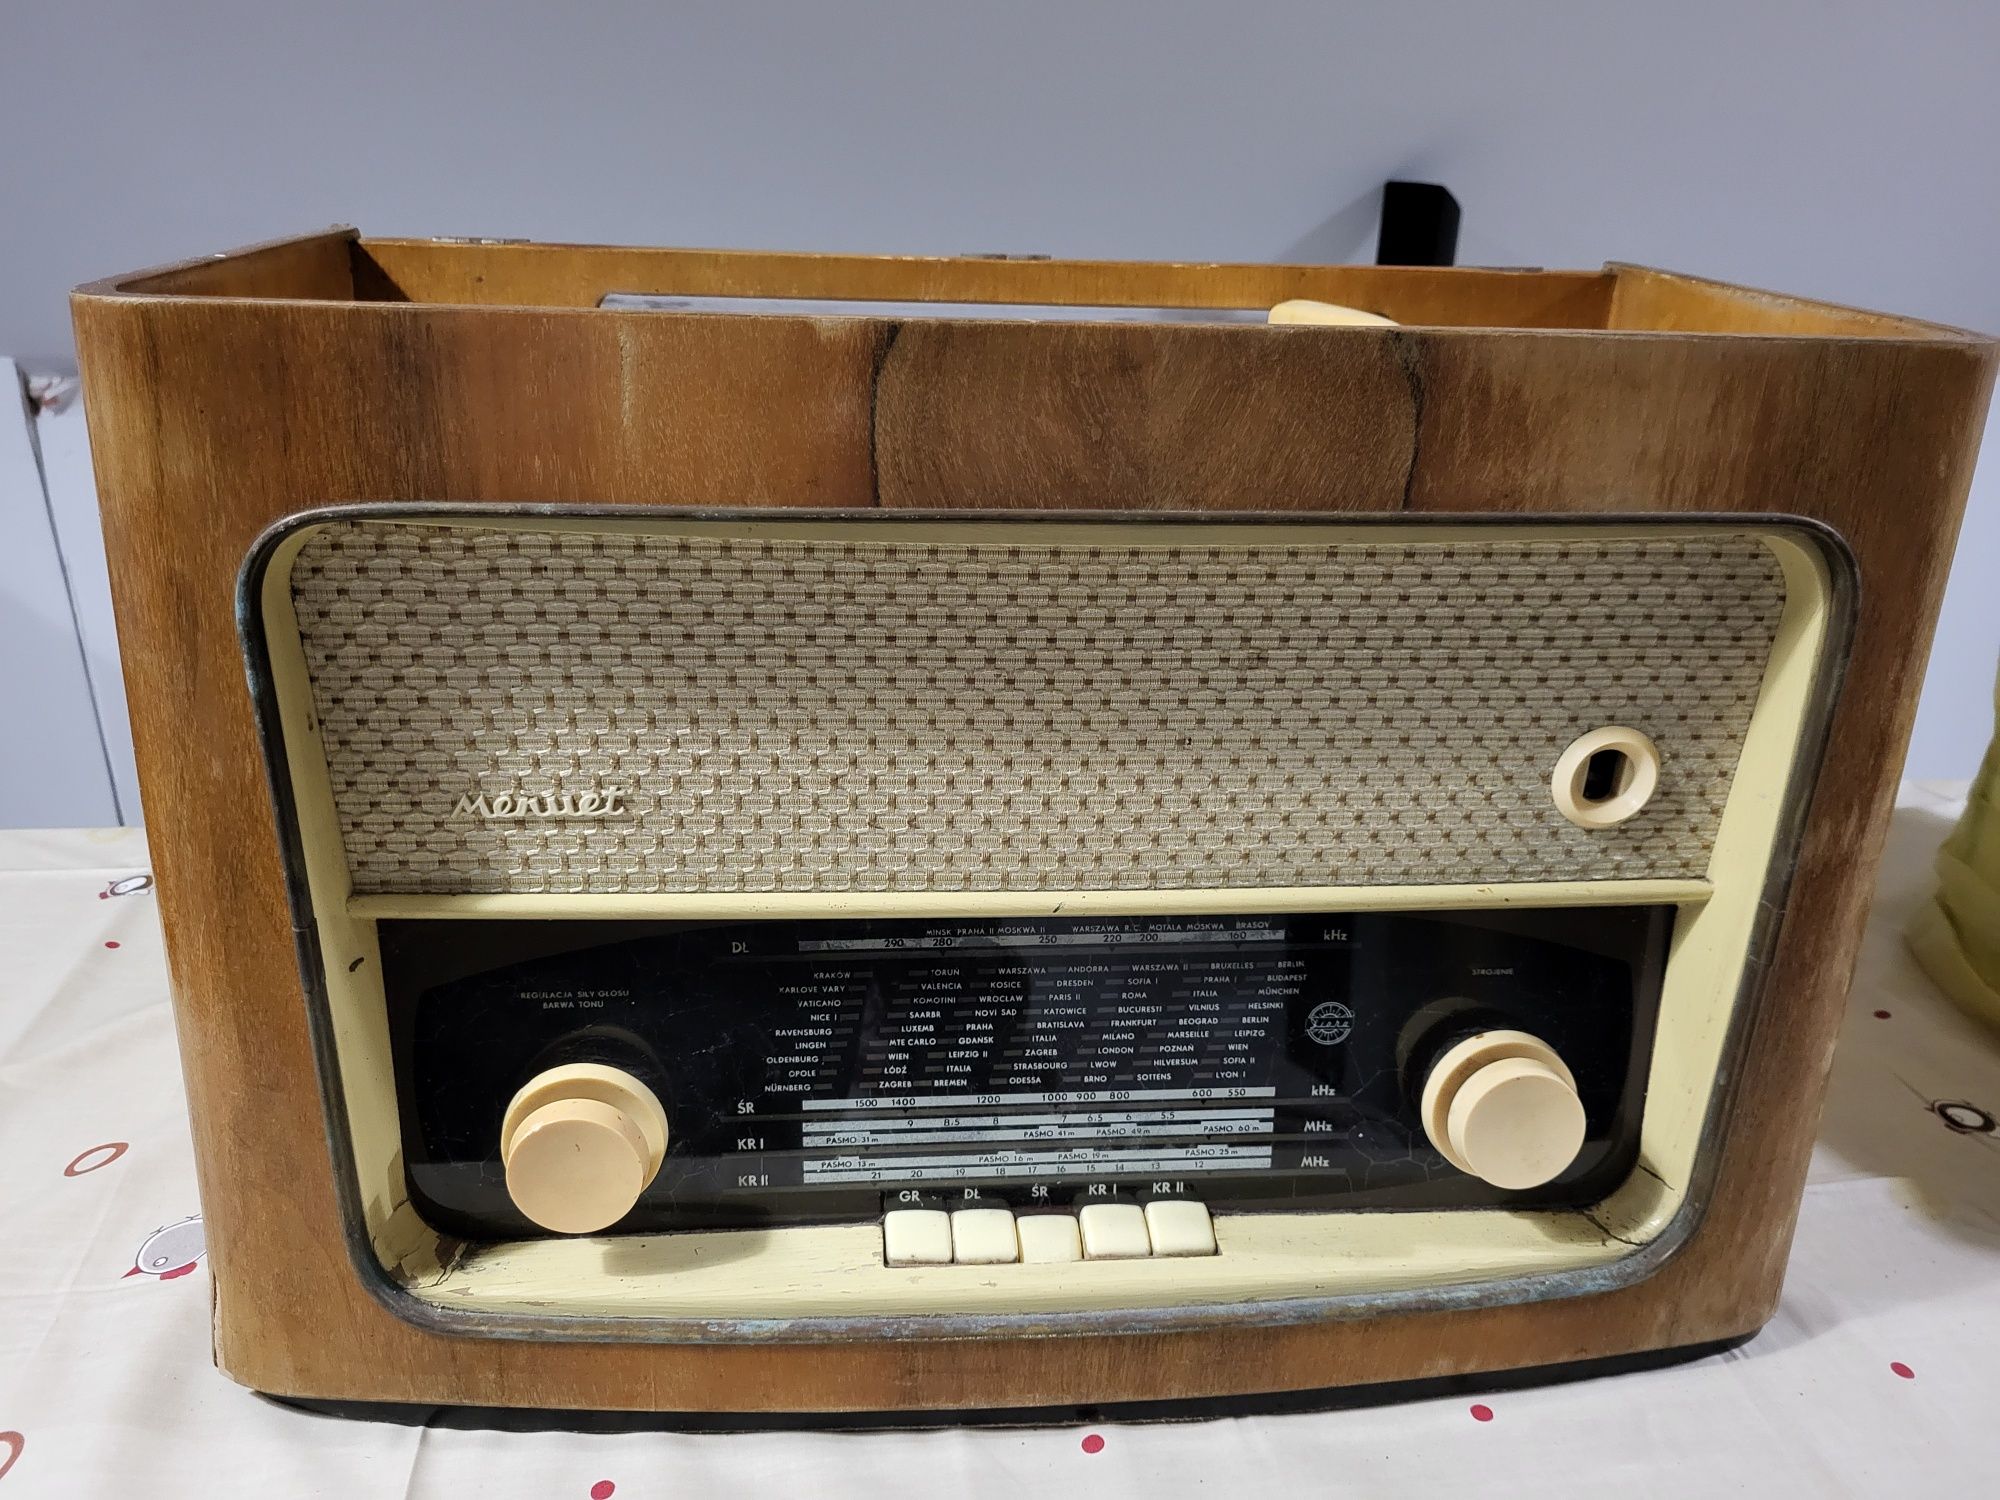 Stare radio z gramofonem

STARE RADIO Z GRAMOF